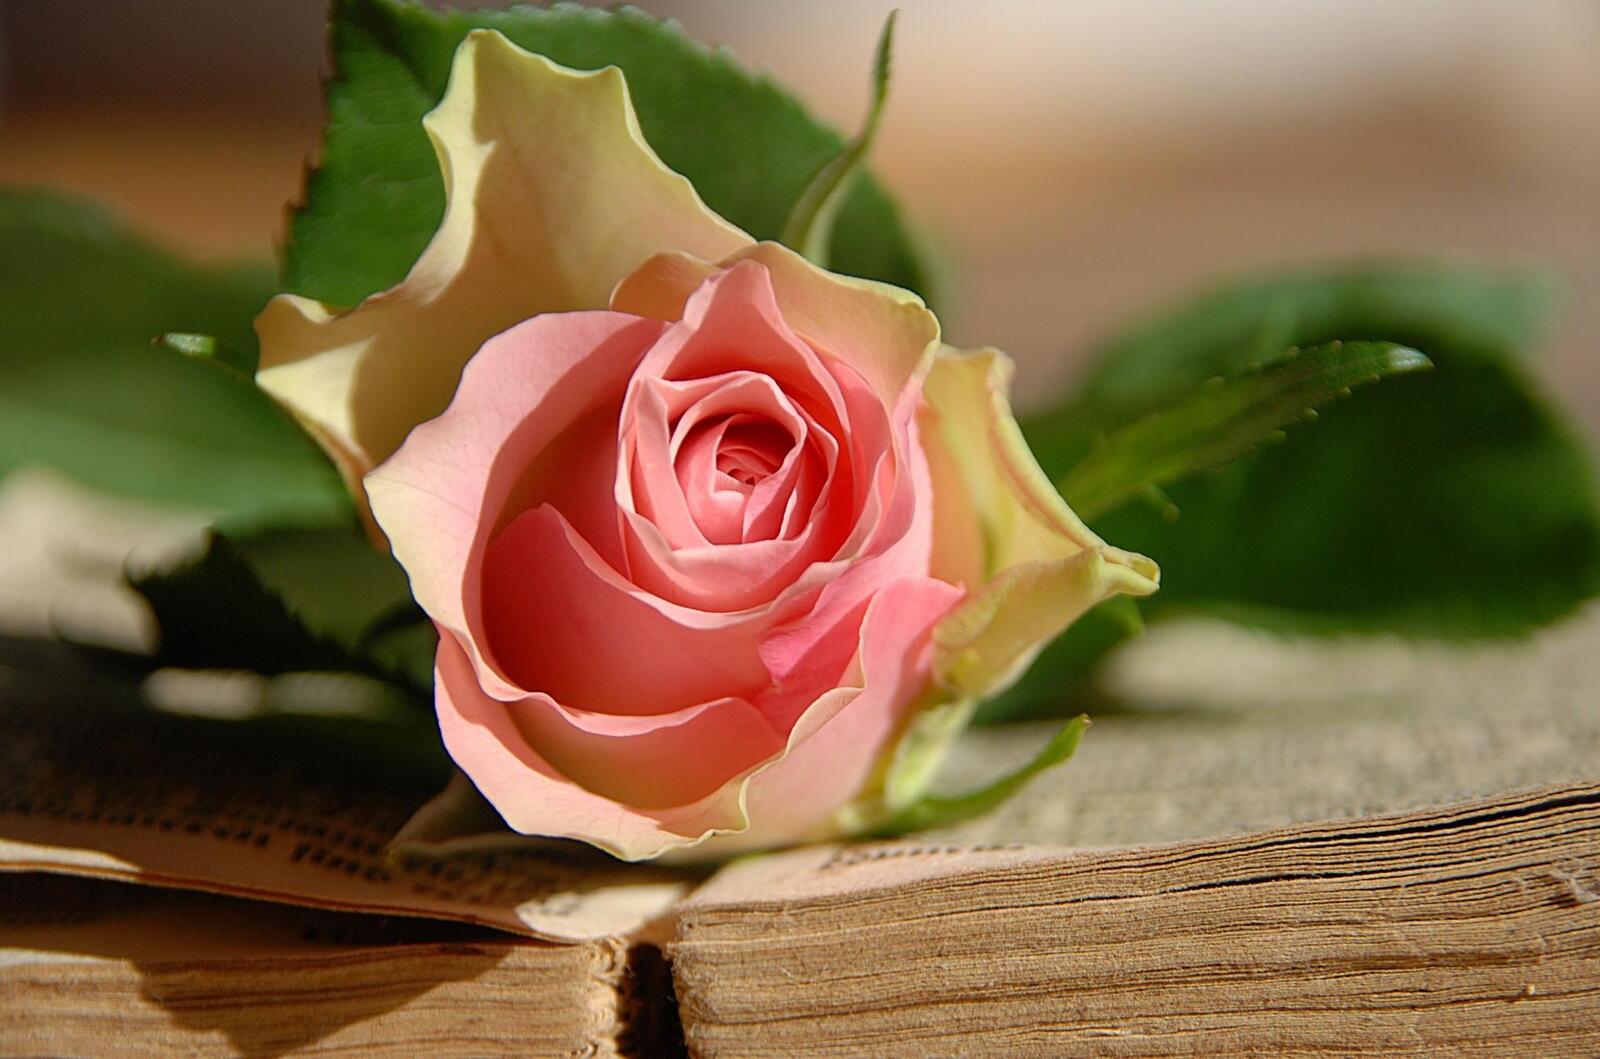 Обои роза цветок лежит на рабочий стол